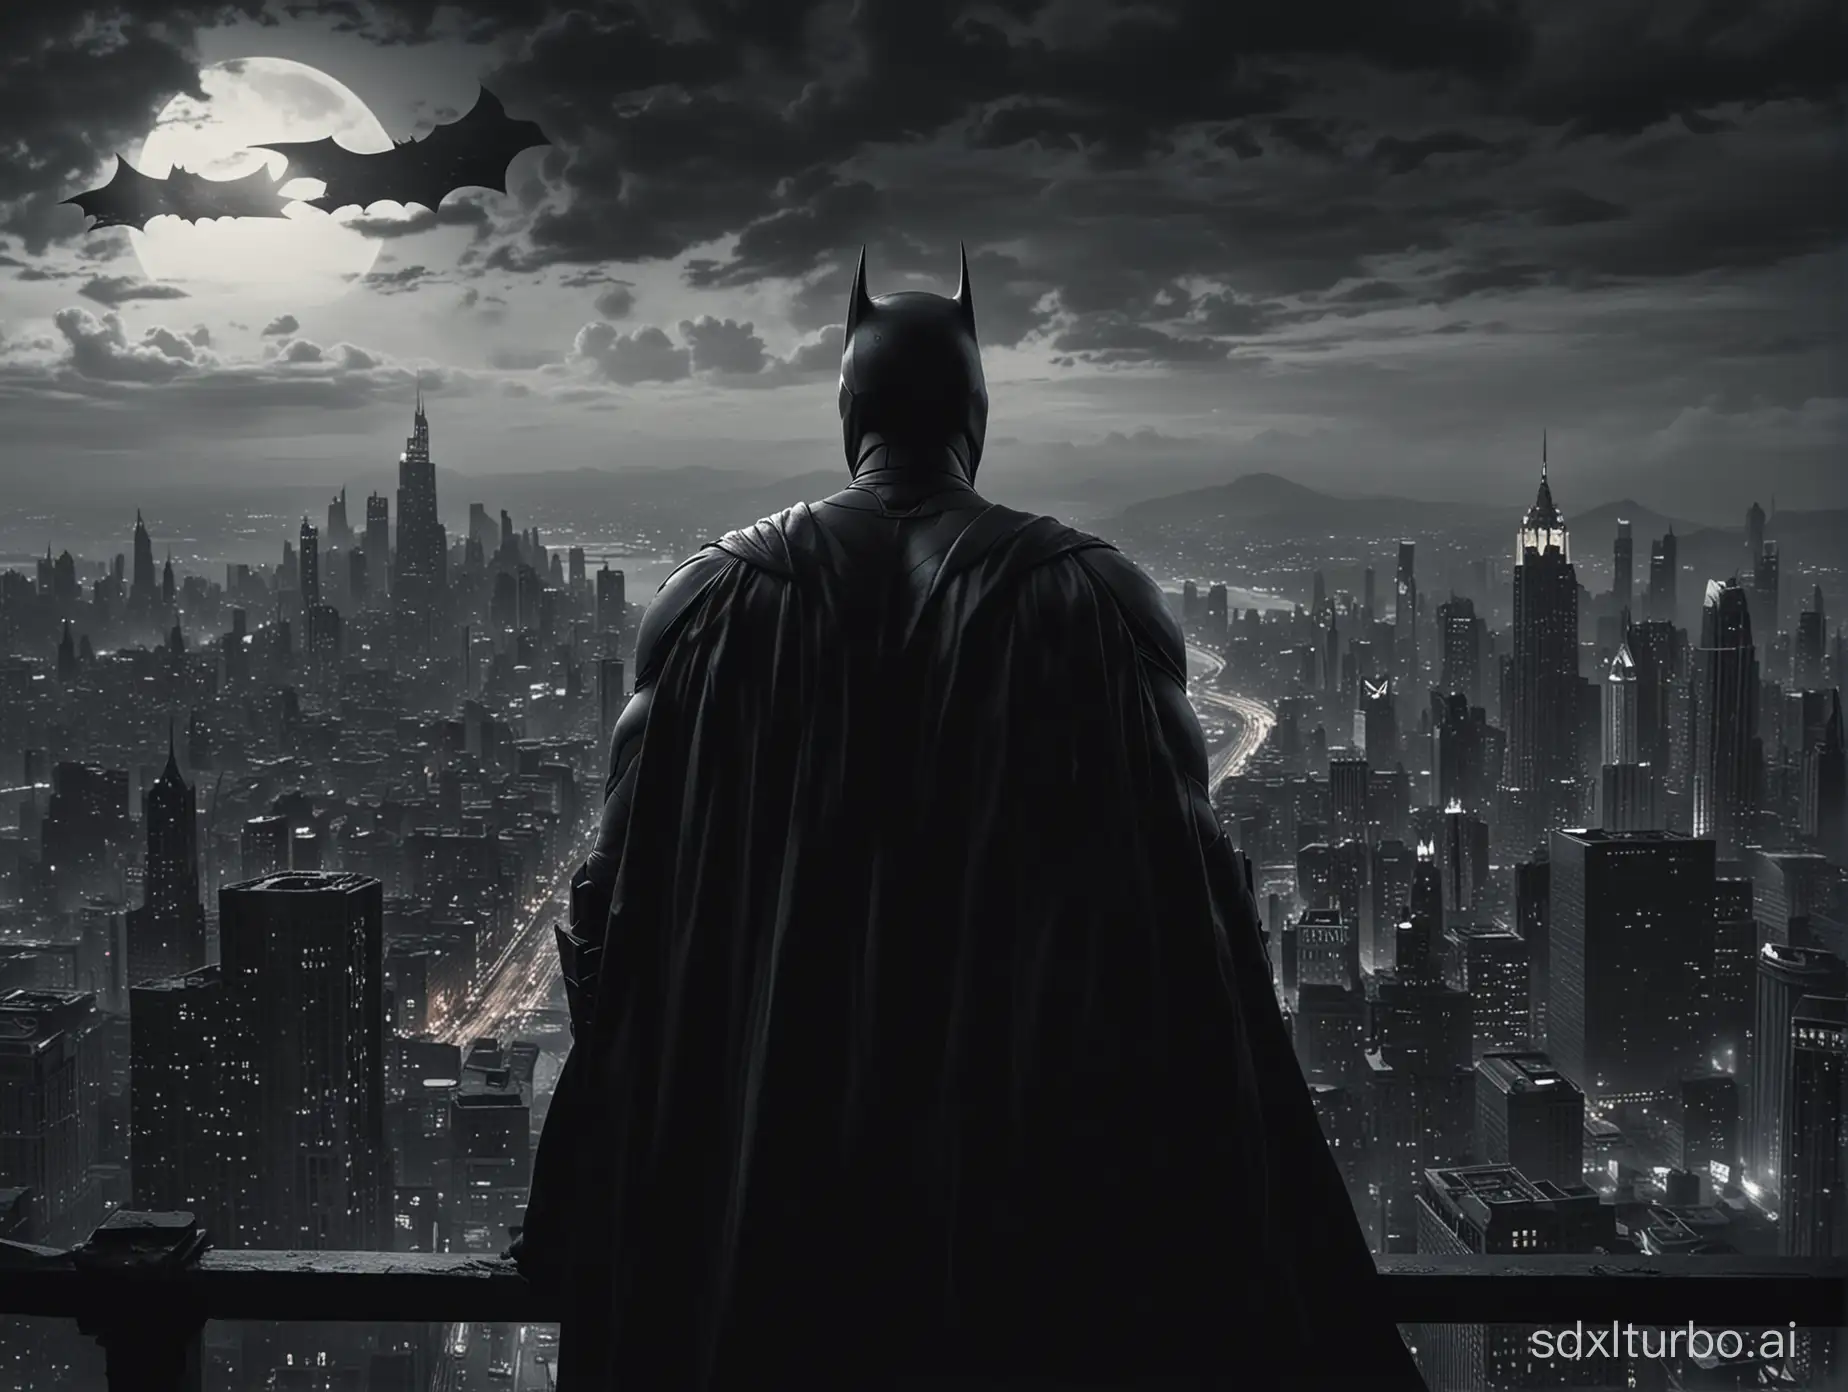 batman gazing gotham city, from high point, dramatic, moody, cinematic